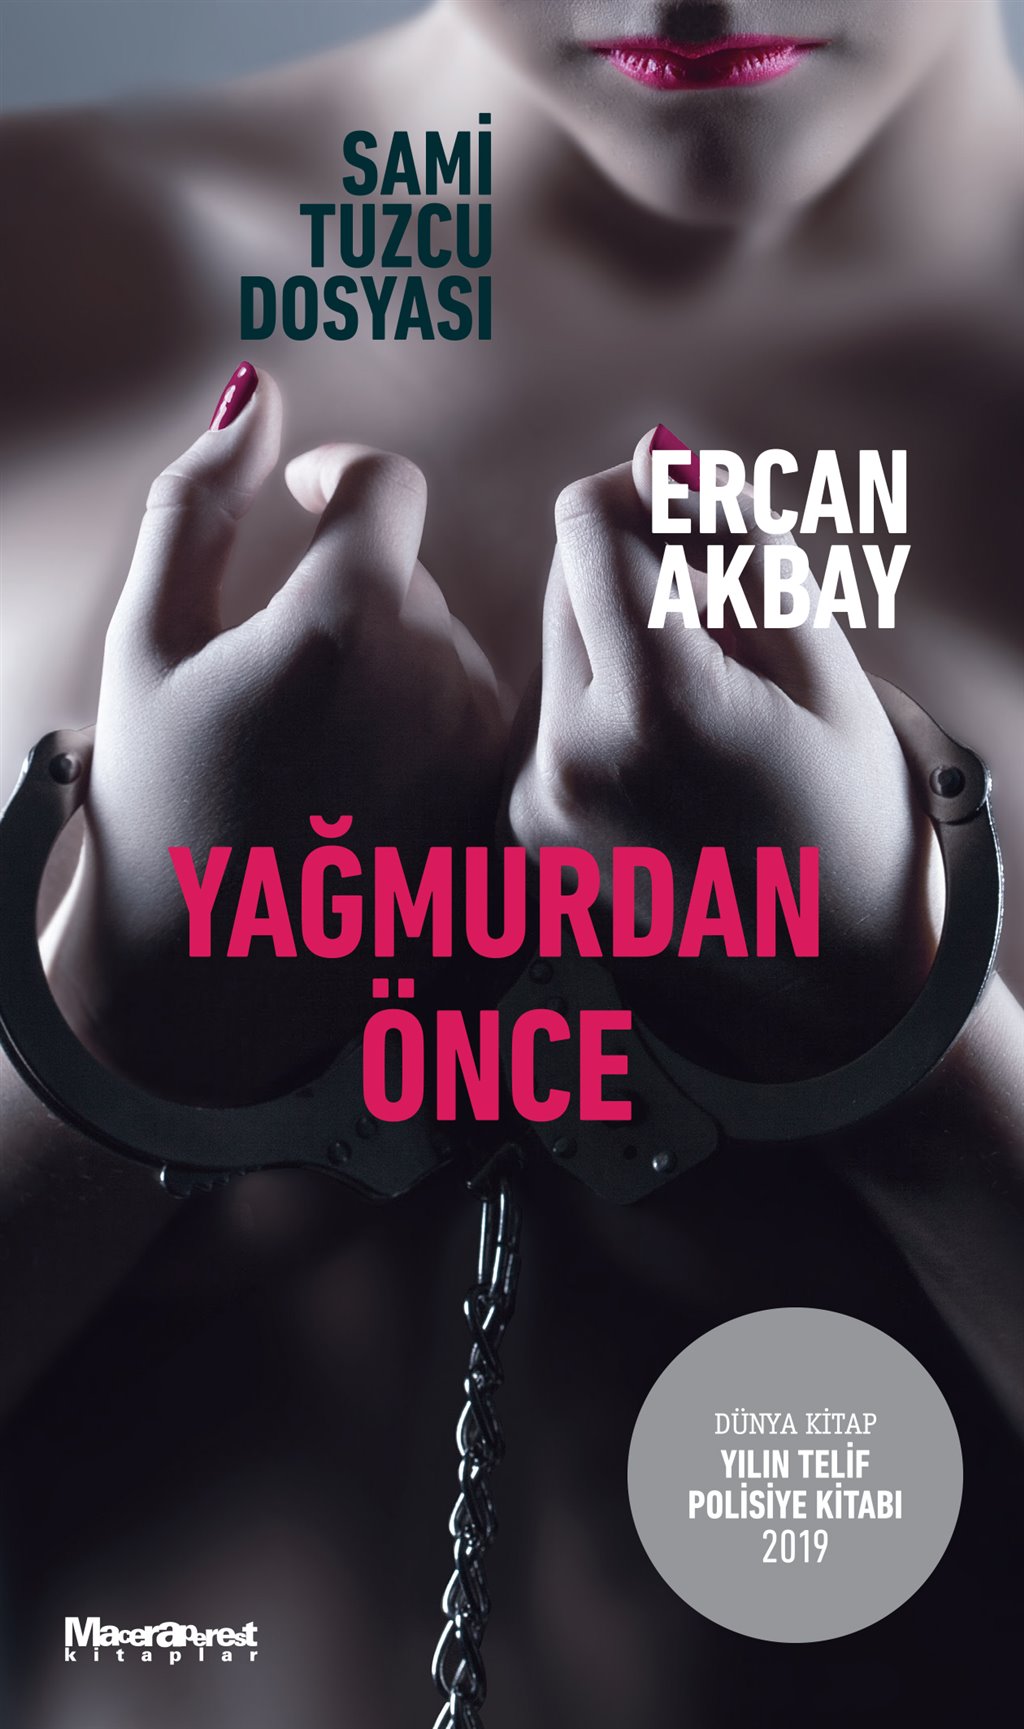 Yagmurdan-Once